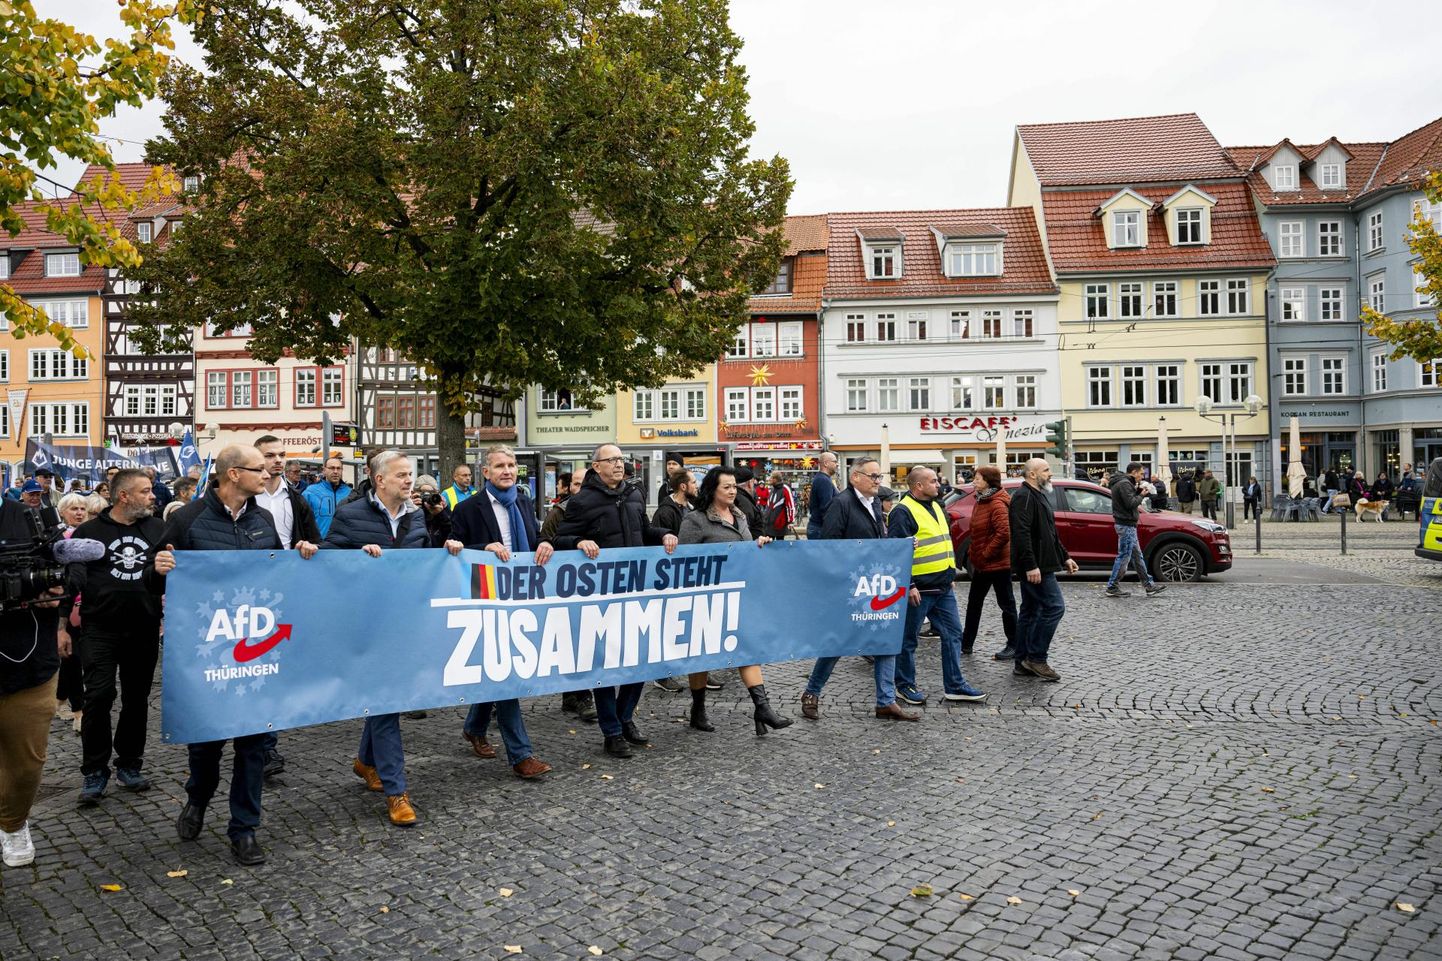 Partei Alternatiiv Saksamaale toetajate demonstratsioon Tüüringi liidumaa pealinnas Erfurtis 28. oktoobril. «Ida seisab koos!» kuulutab sõnum erakonna liikmete plakatil. 